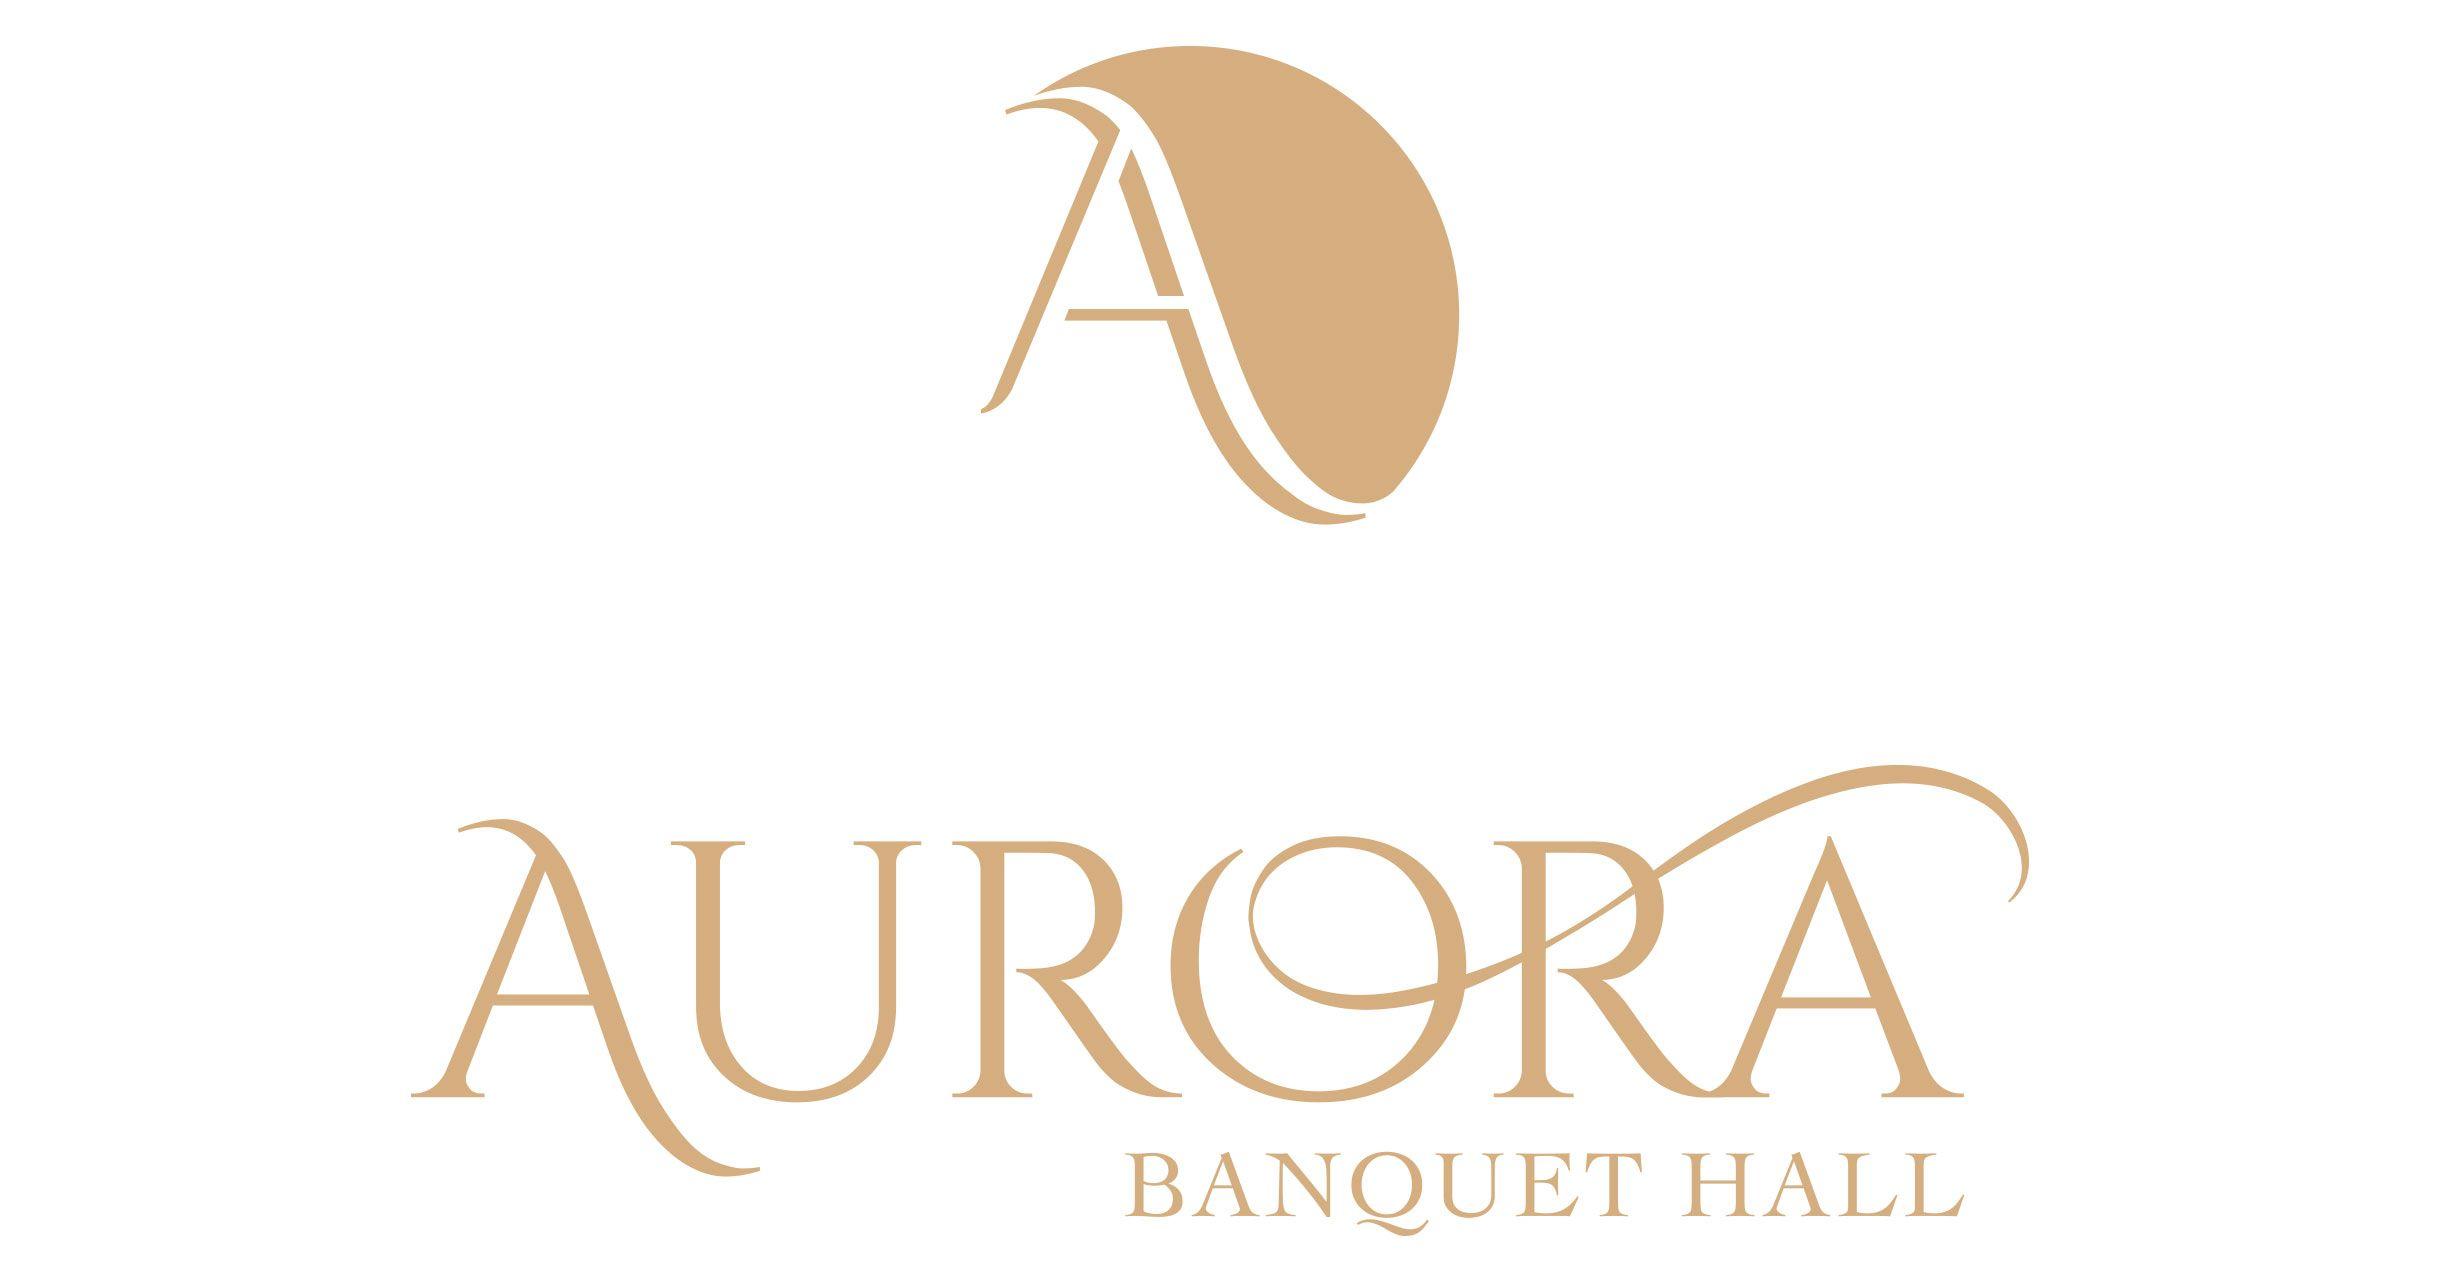 Hall Logo - Banquet Hall Logo Design in Los Angeles